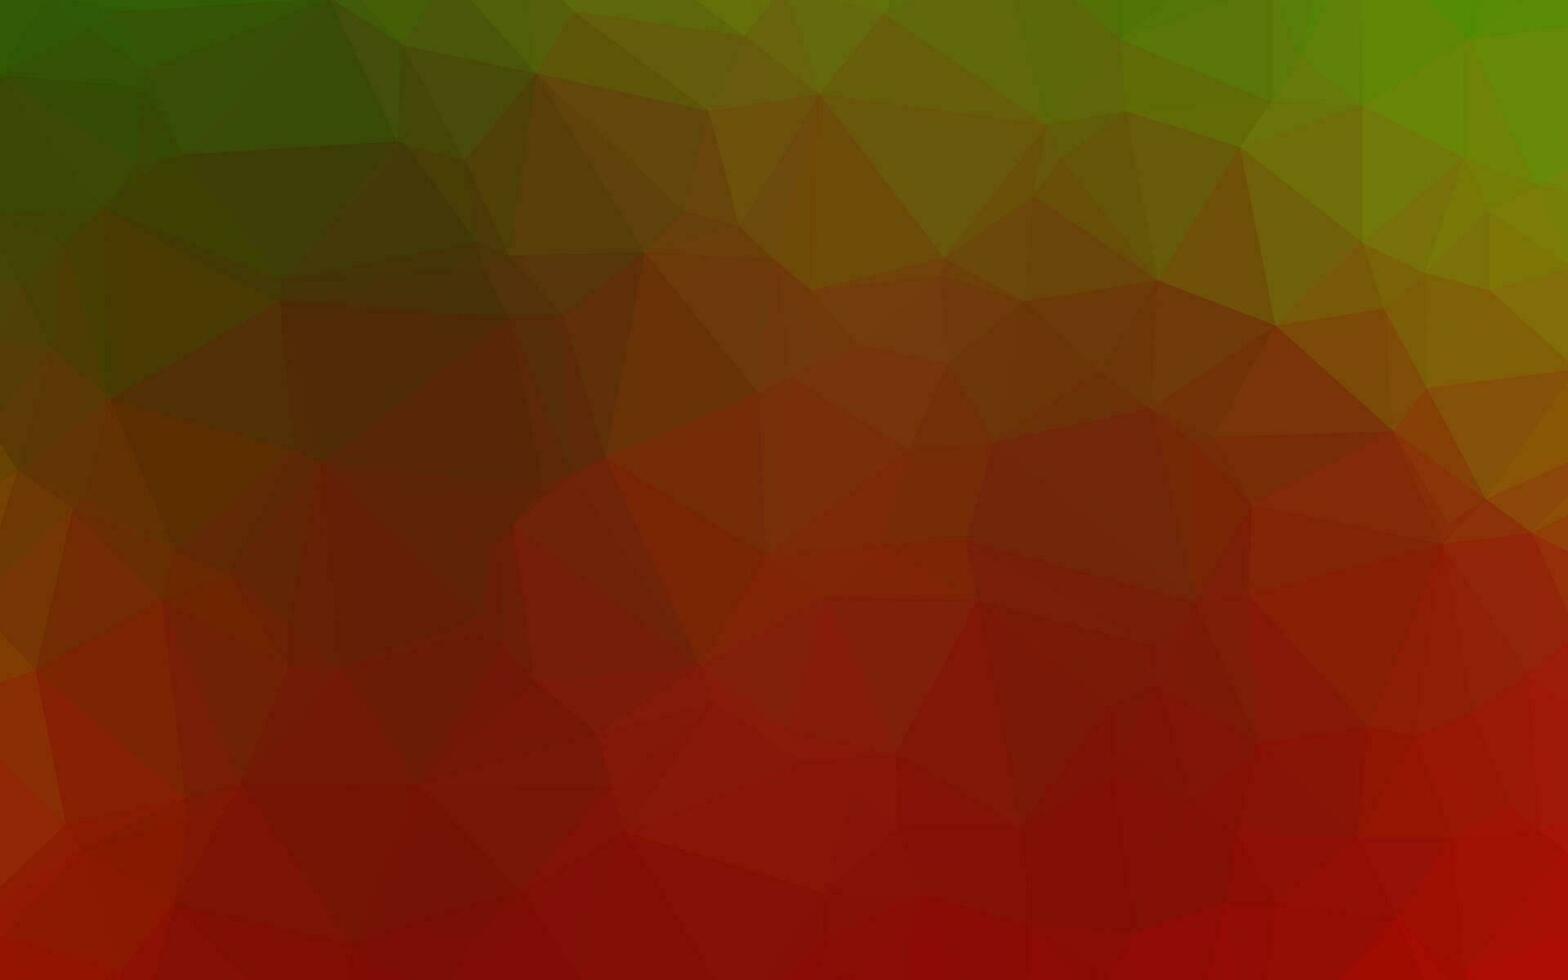 sfondo poligonale vettoriale verde chiaro, rosso.